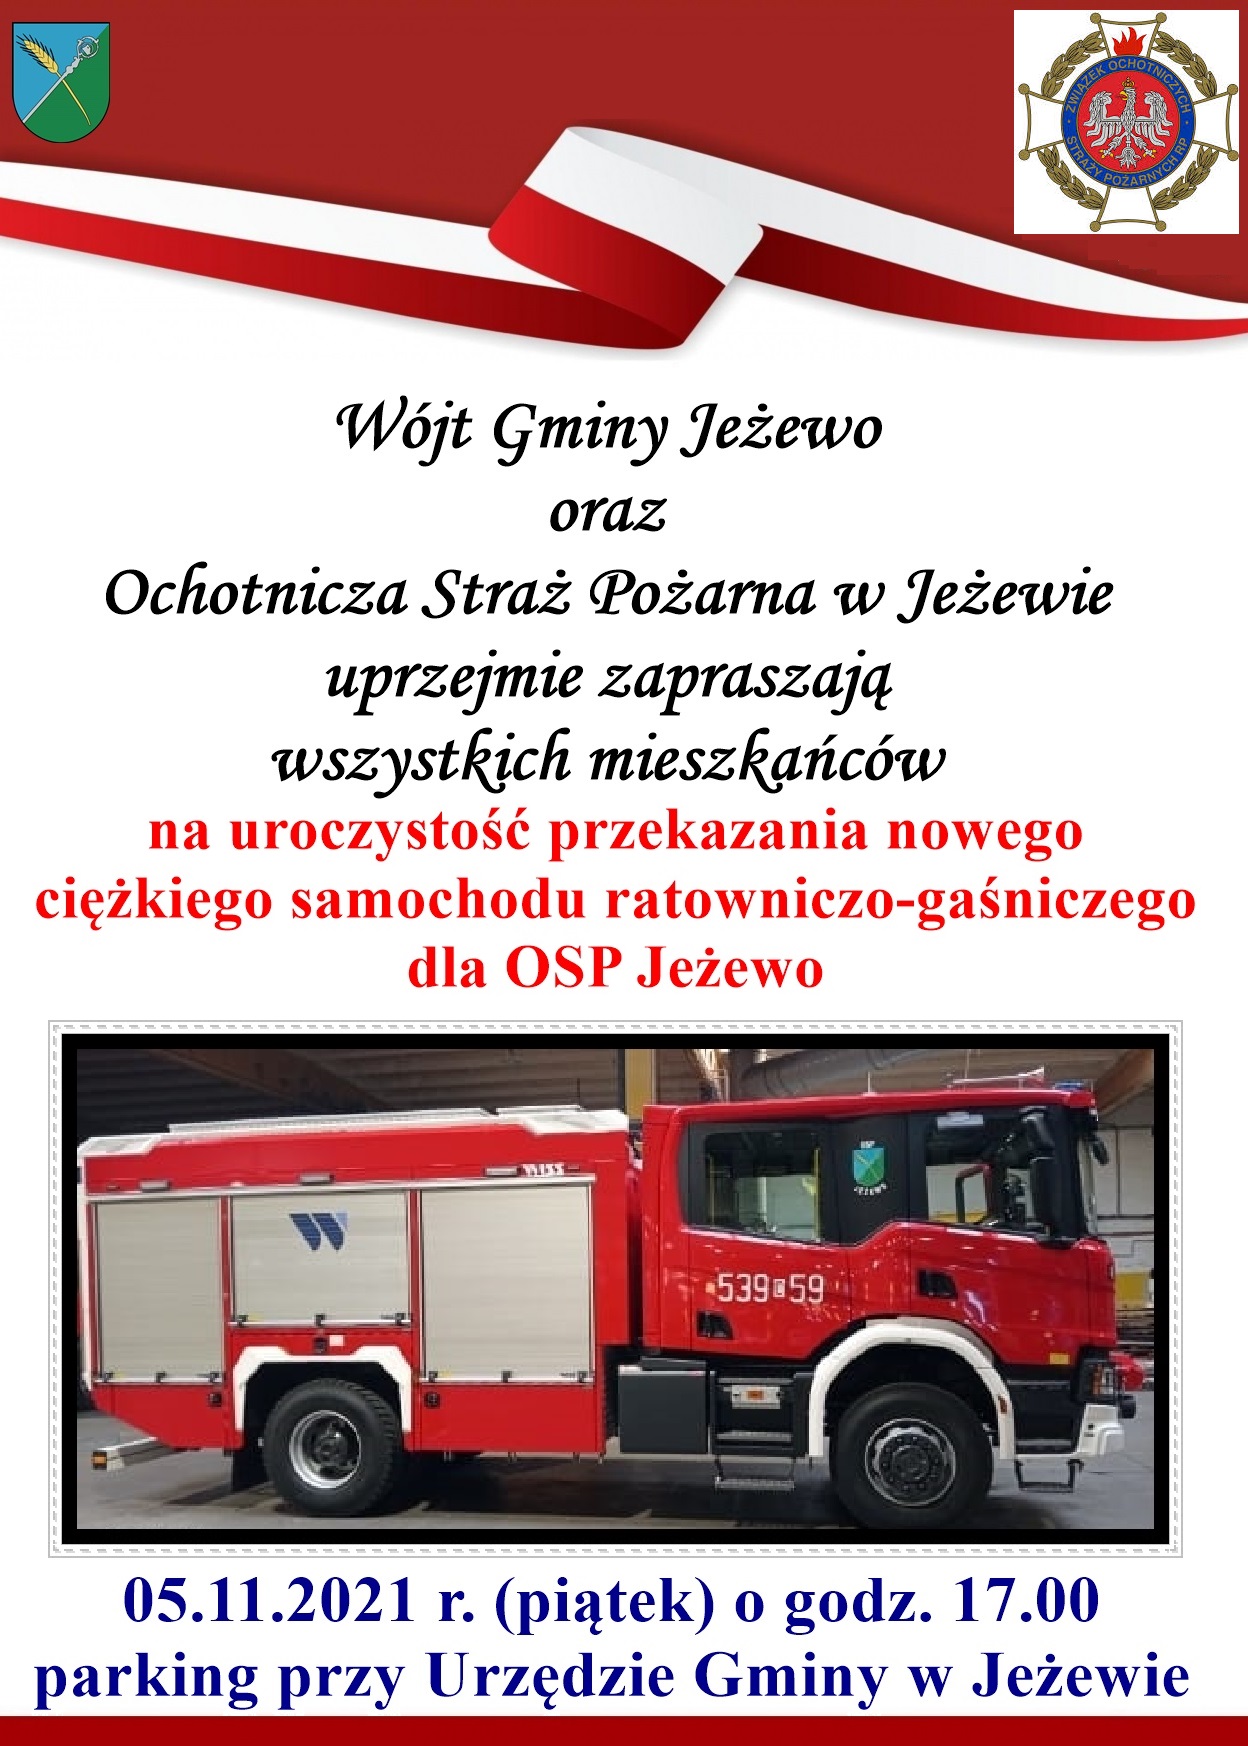 Przekazanie ciężkiego samochodu ratowniczo-gaśniczego 5.11.2021 r.